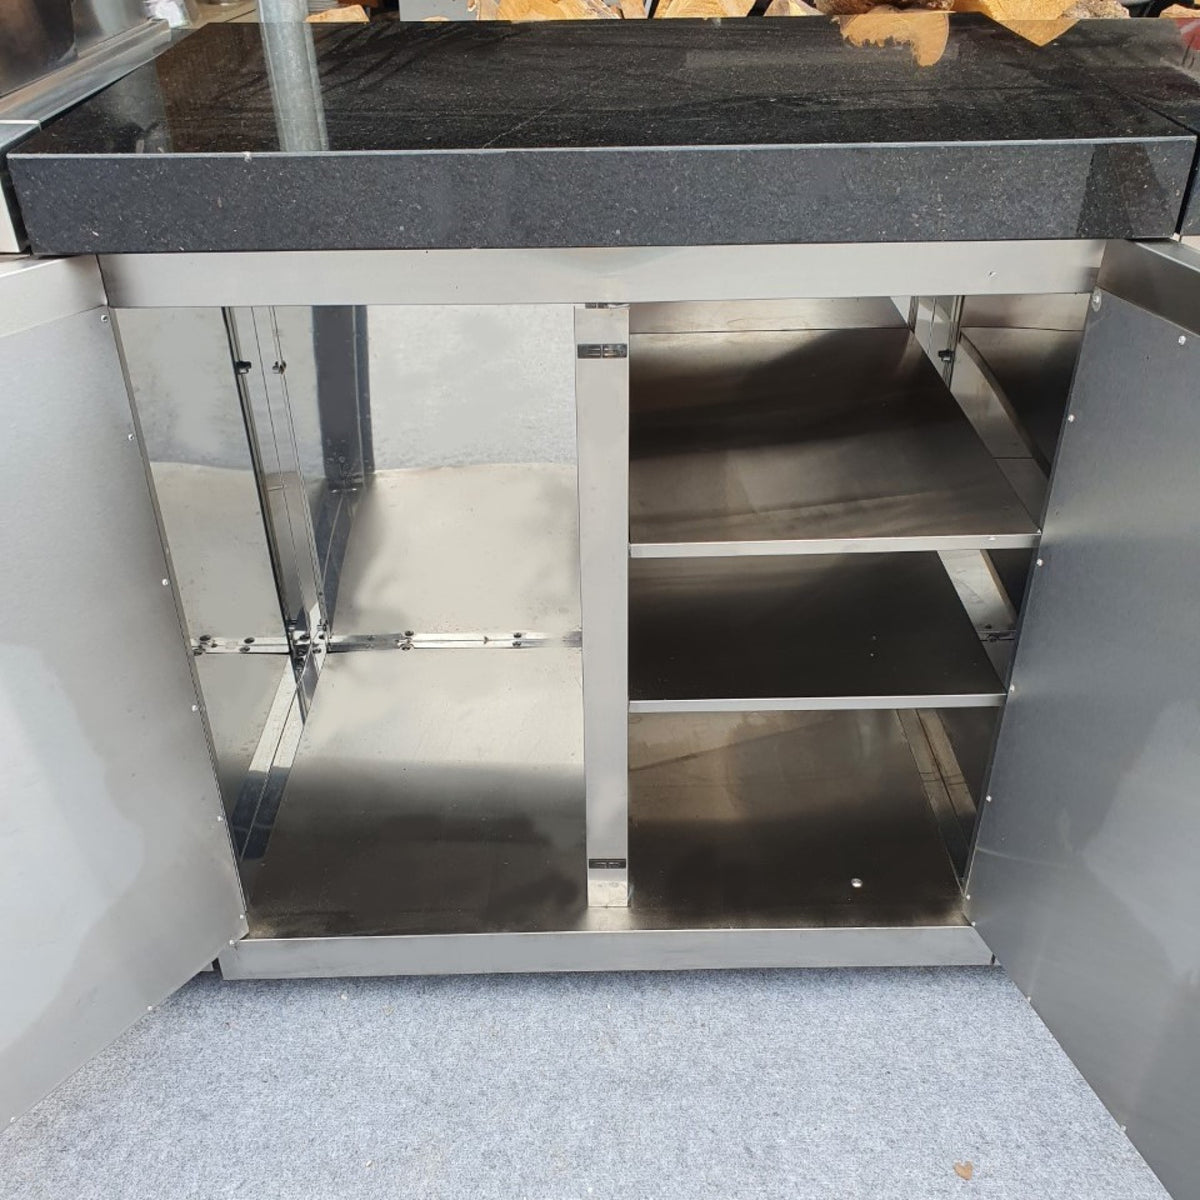 Draco Grills Outdoor Kitchen Stainless Steel Double Door Cabinet with Granite Top